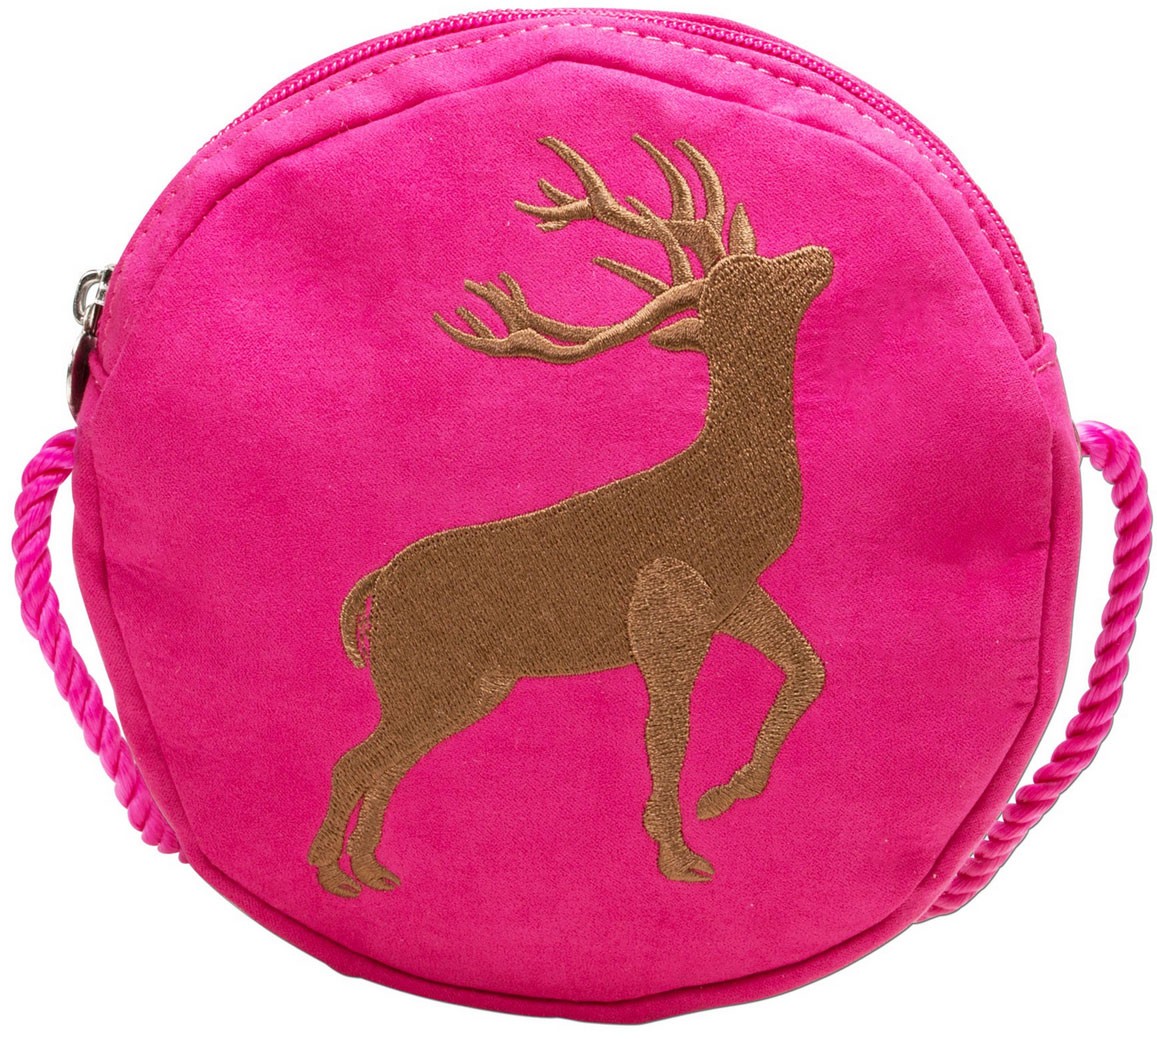 Traditionele ronde zak met hertenborduurwerk roze